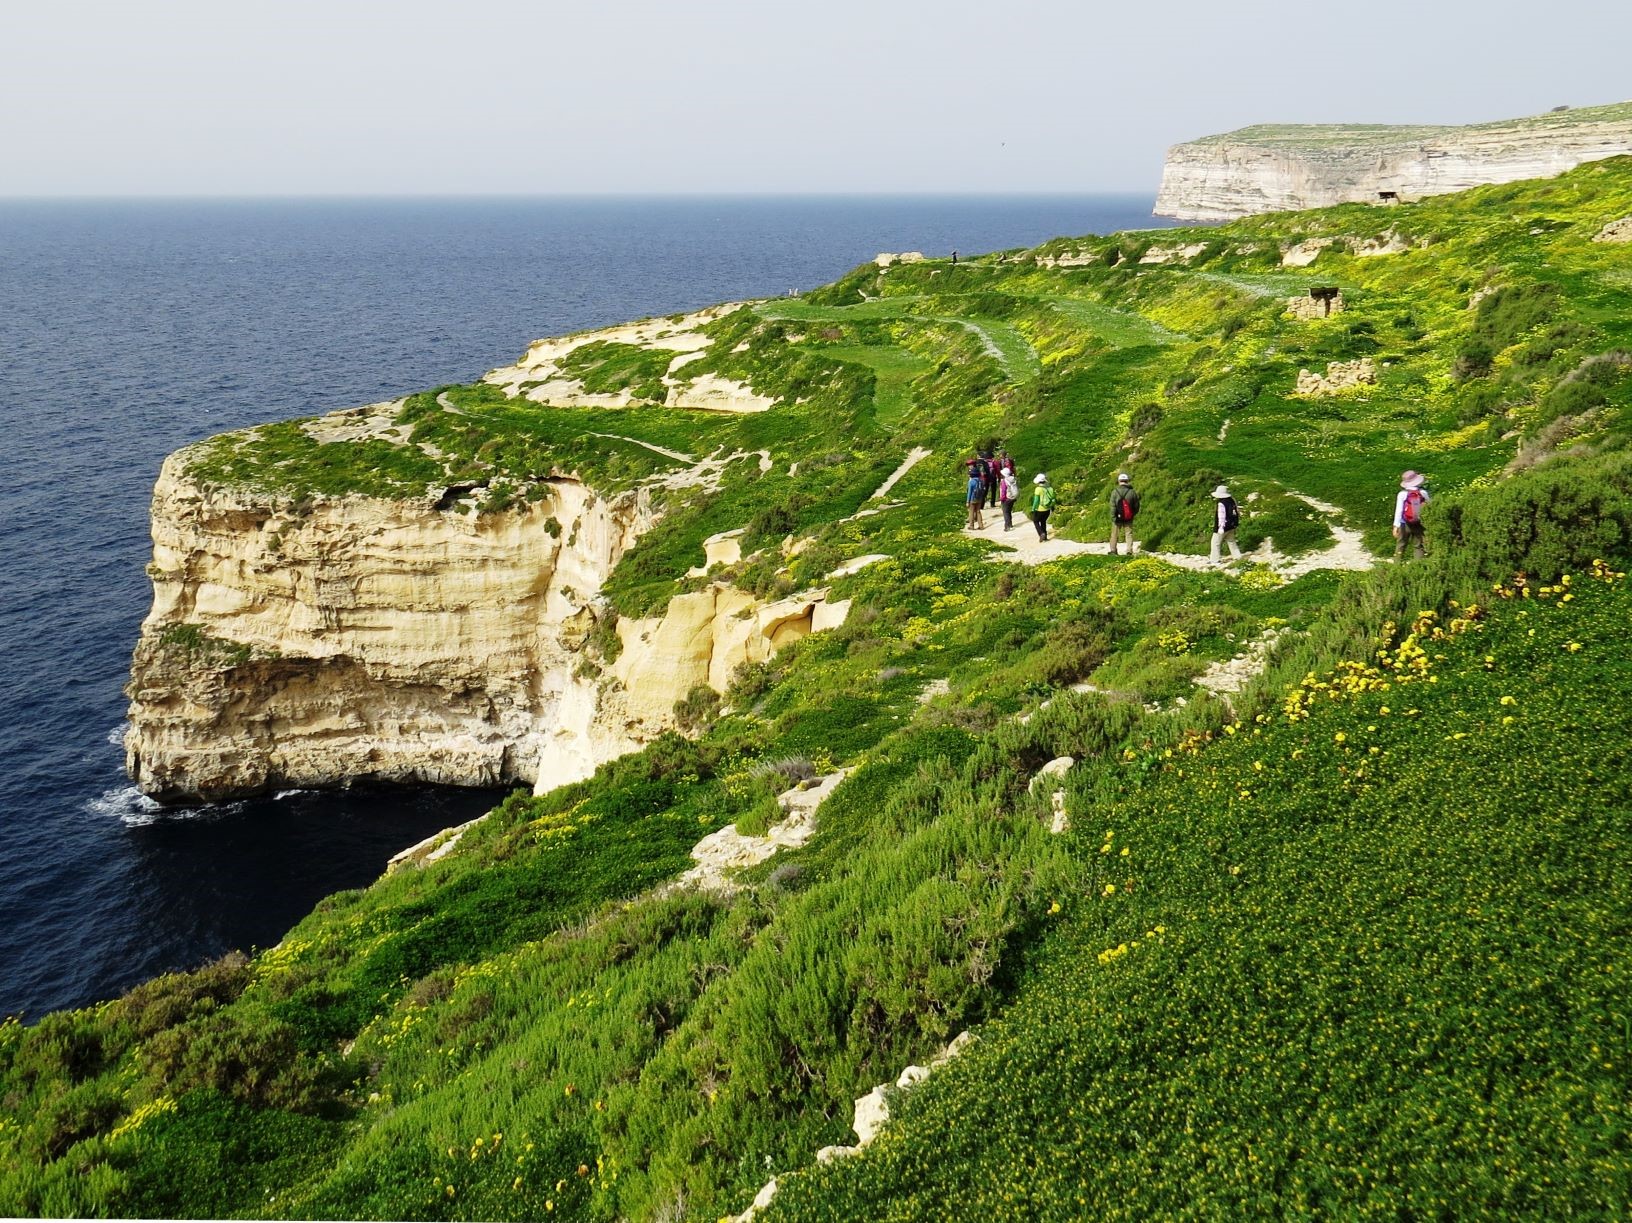 ゴゾ島の南海岸を歩く。白い石灰岩の断崖を持つ海岸線がマルタ諸島の特徴（6日目）